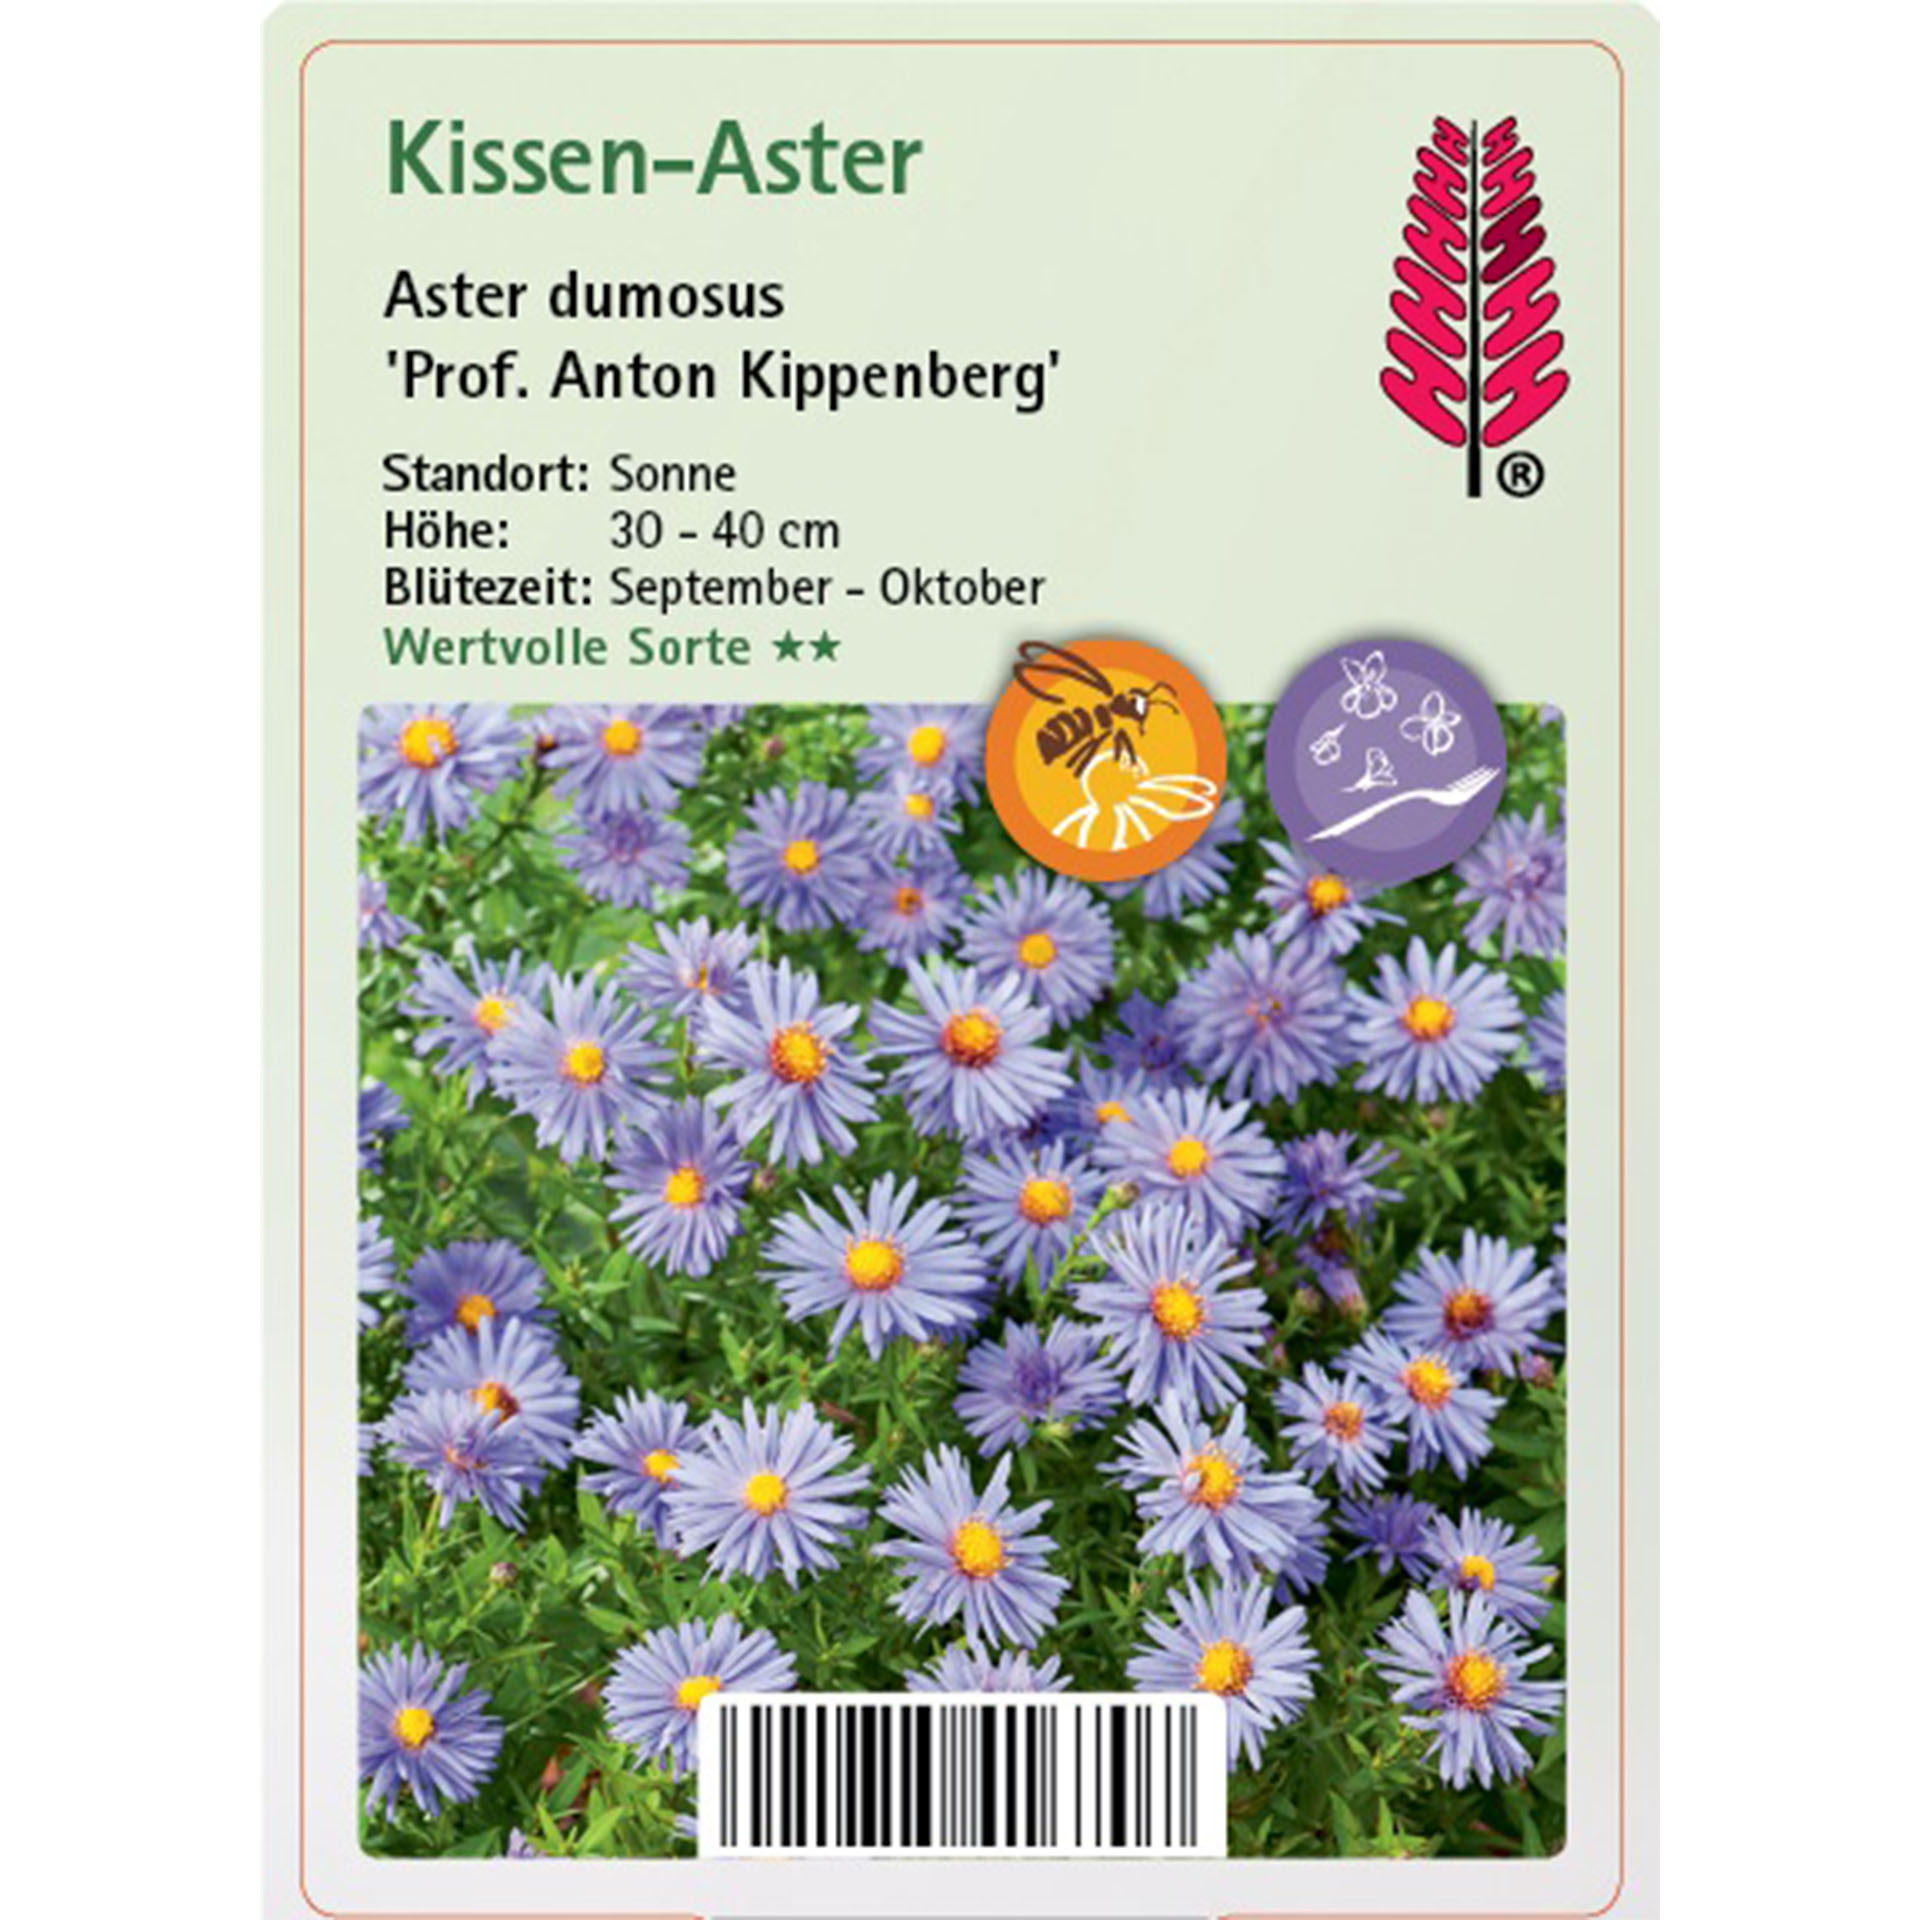 Kissen-Aster - Aster dumosus 'Prof. Anton Kippenberg'